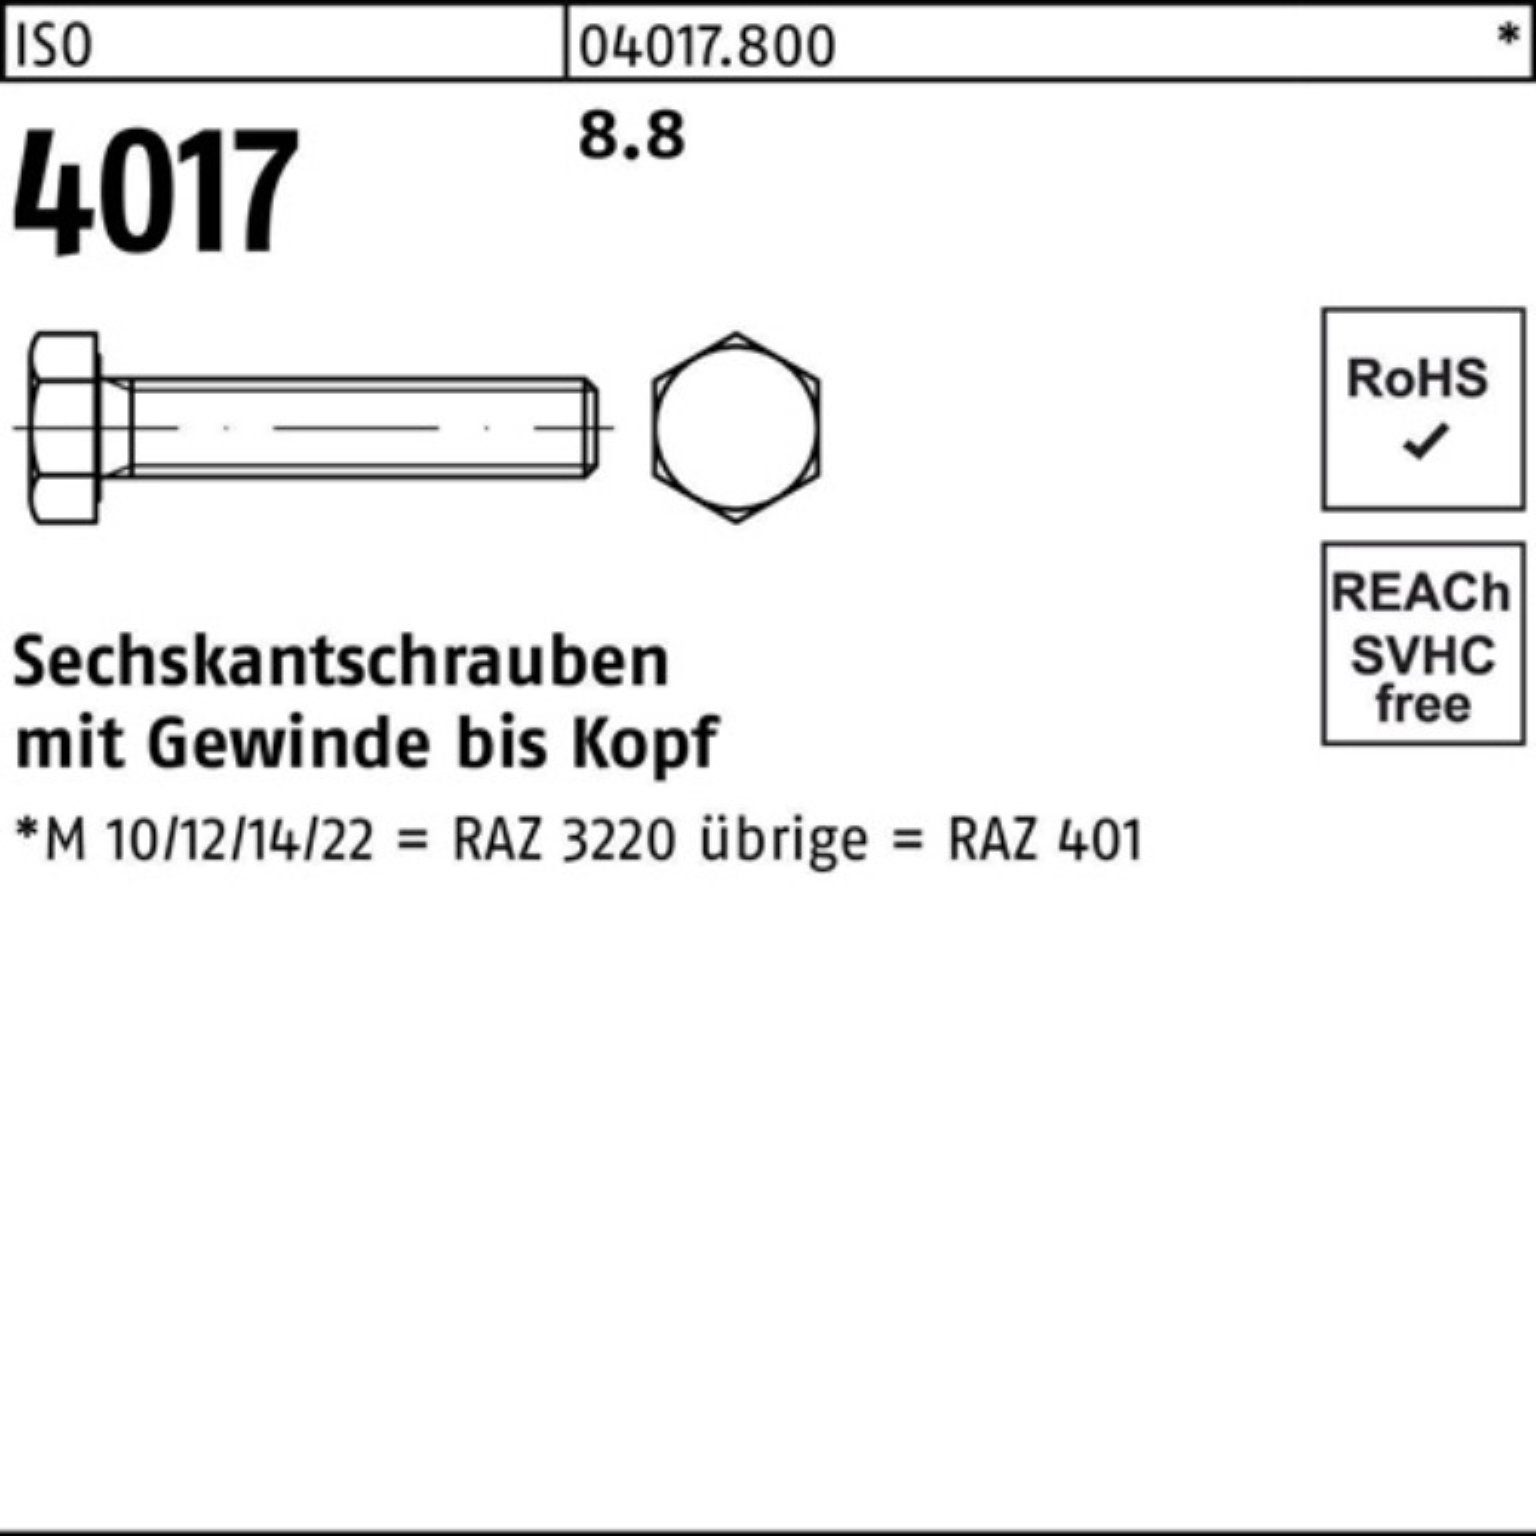 ISO Sechskantschraube 40 8.8 Pack ISO Stück Bufab M14x 25 170 100er 4017 Sechskantschraube VG